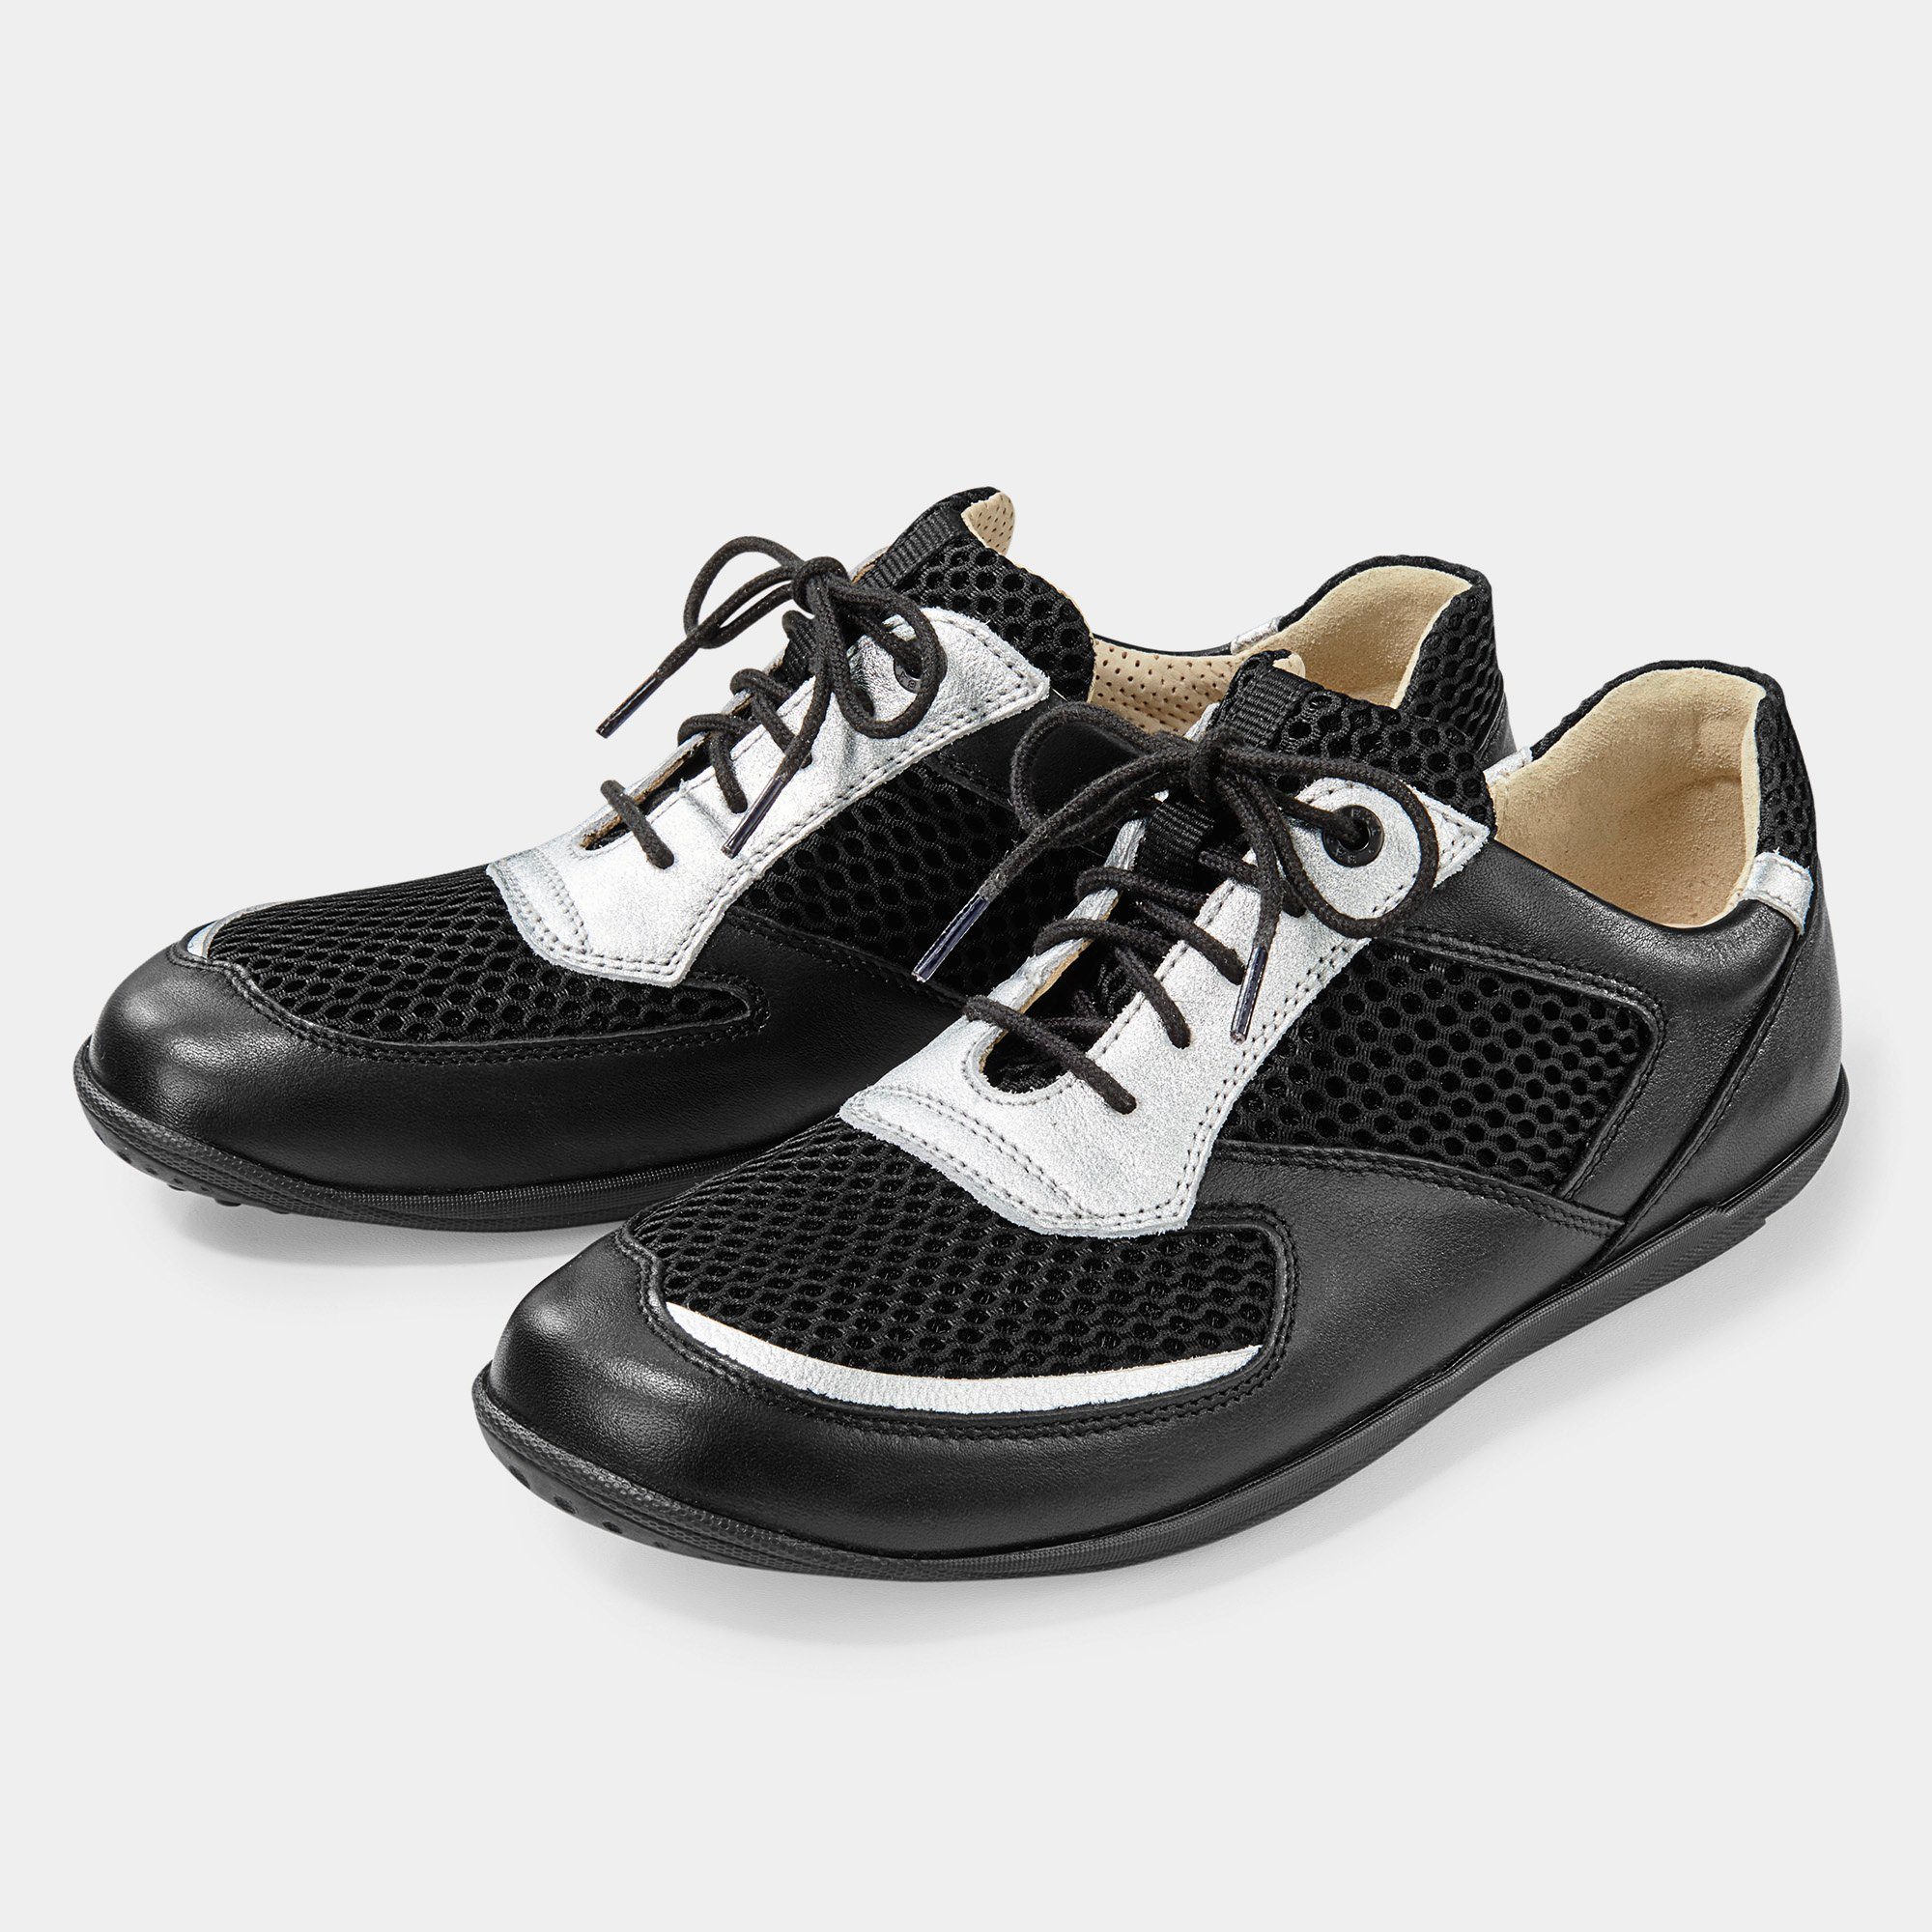 BÄR Schuhe Damenschuh - Modell Michaela in der Farbe Schwarz/silber  Schnürschuh Extrem leicht und luftdurchlässig